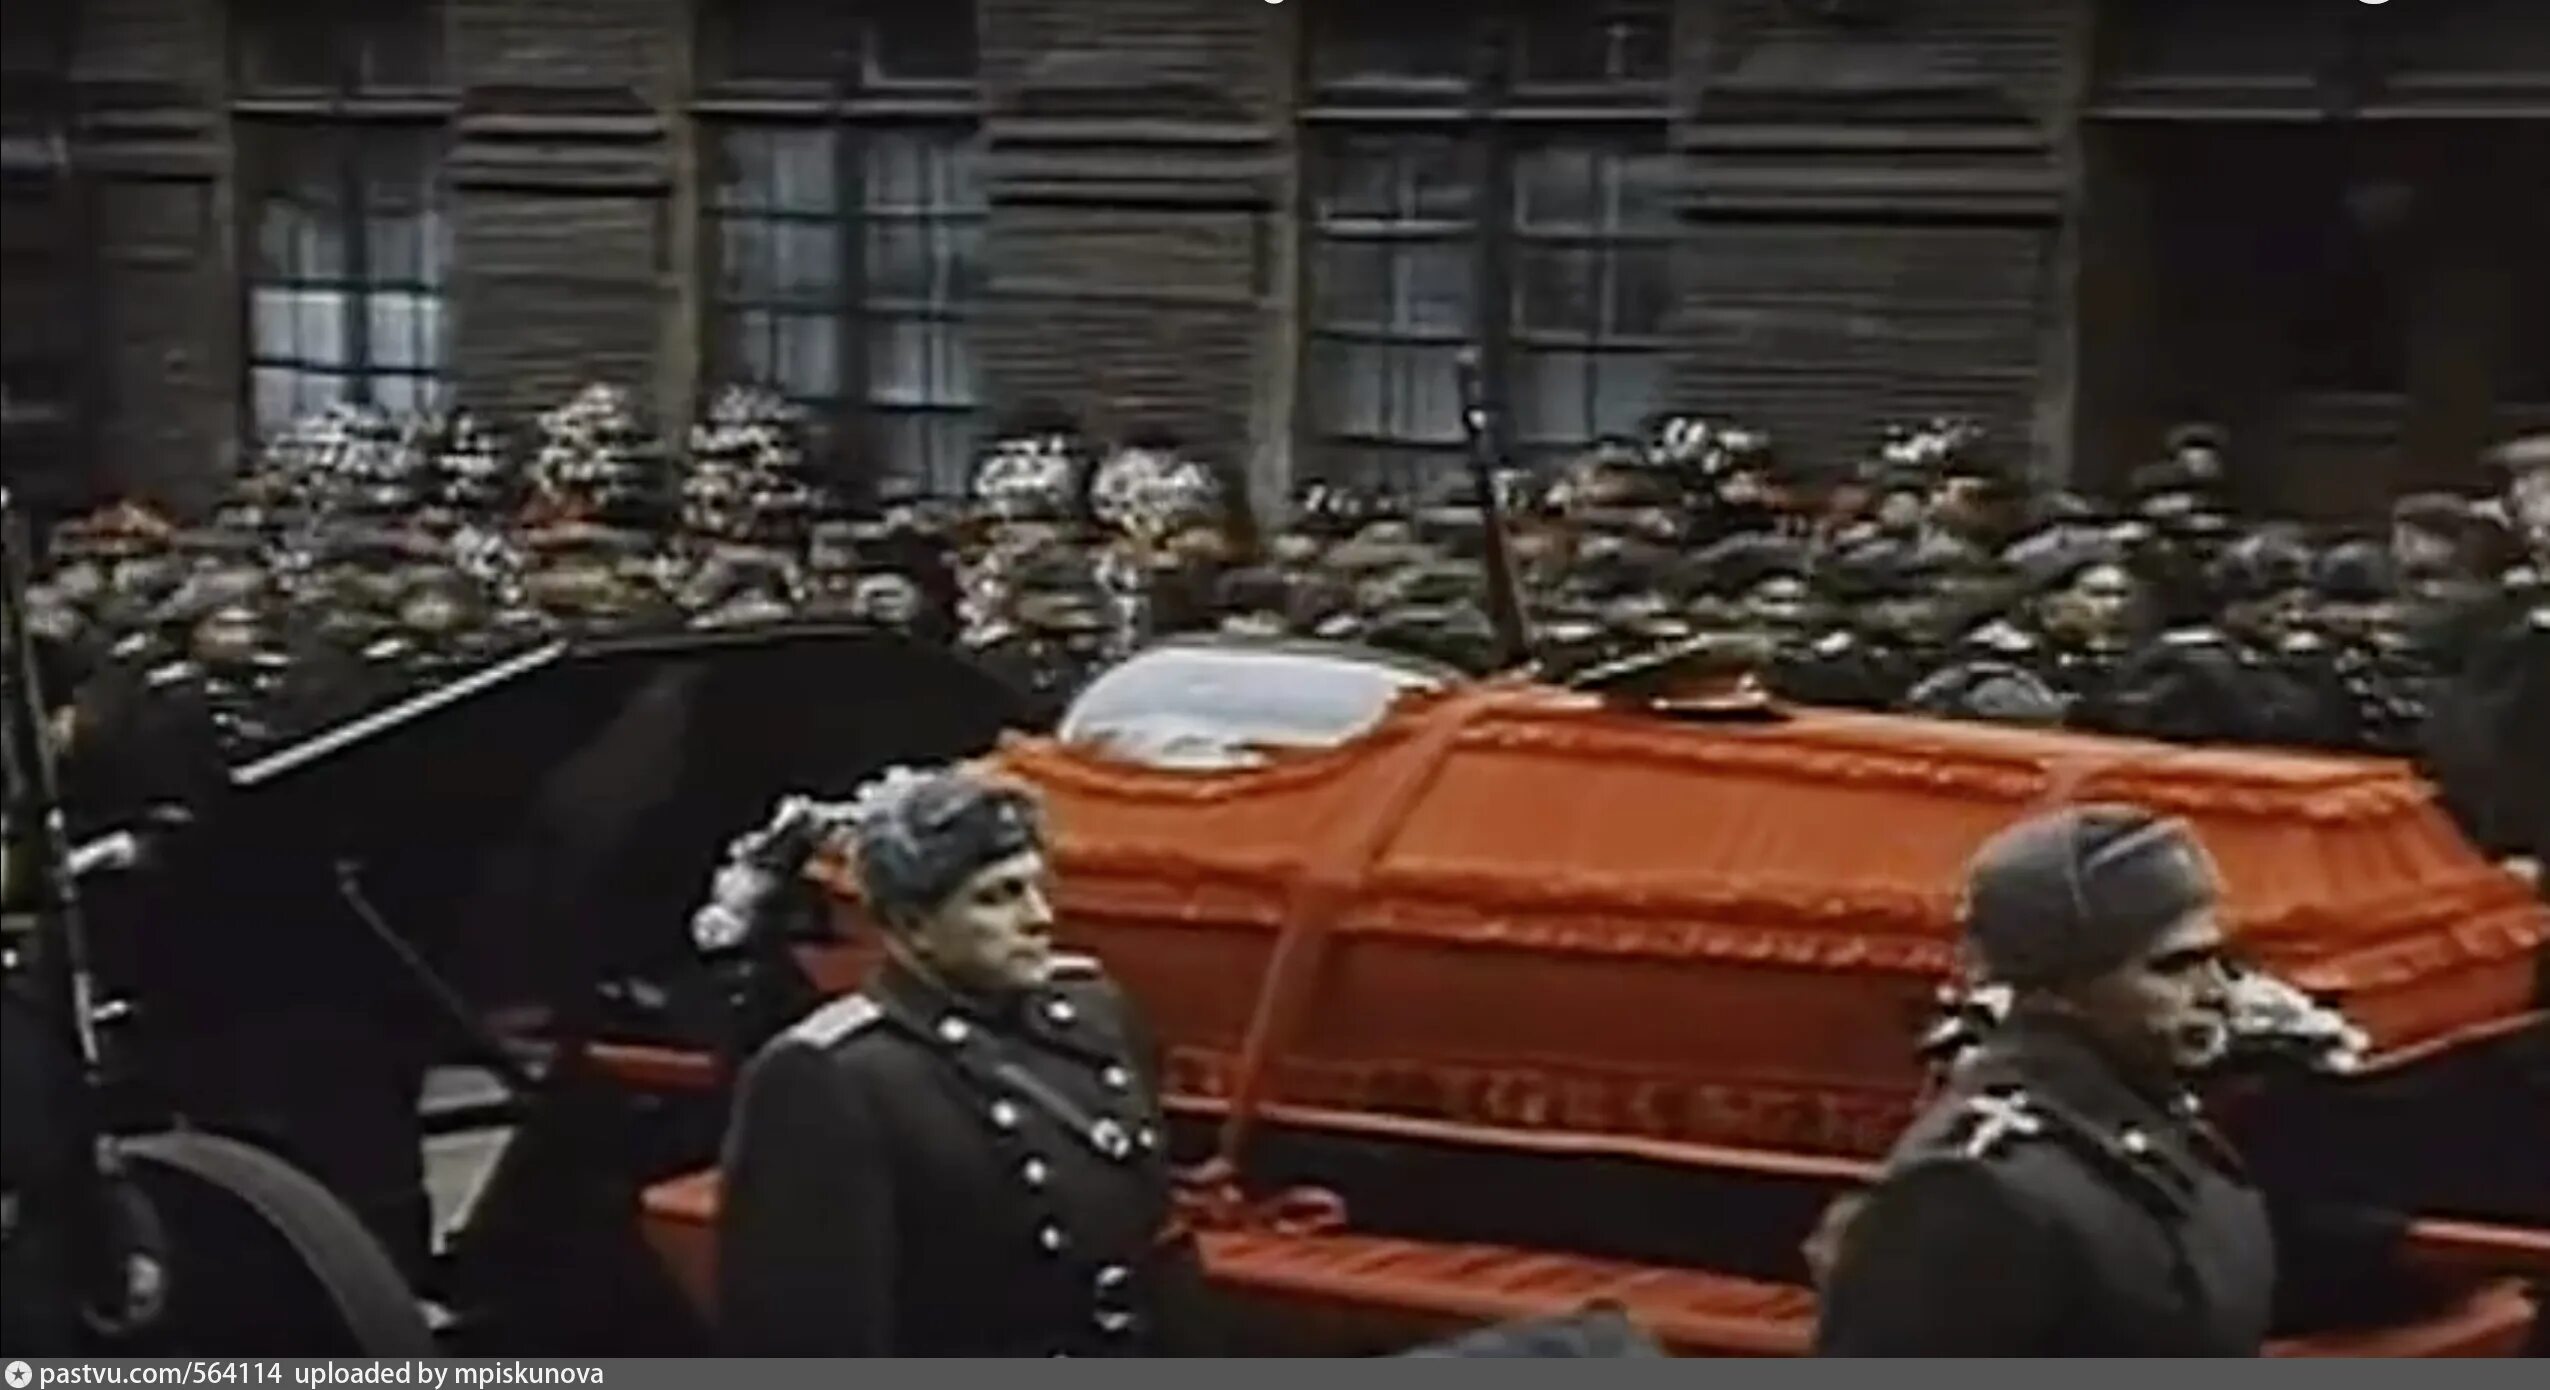 Сталин прощание. Похороны Сталина 1953. Сталин Иосиф Виссарионович похороны Сталина. Иосиф Сталин 1953 похороны. Похороны Сталина 1953 мавзолей.